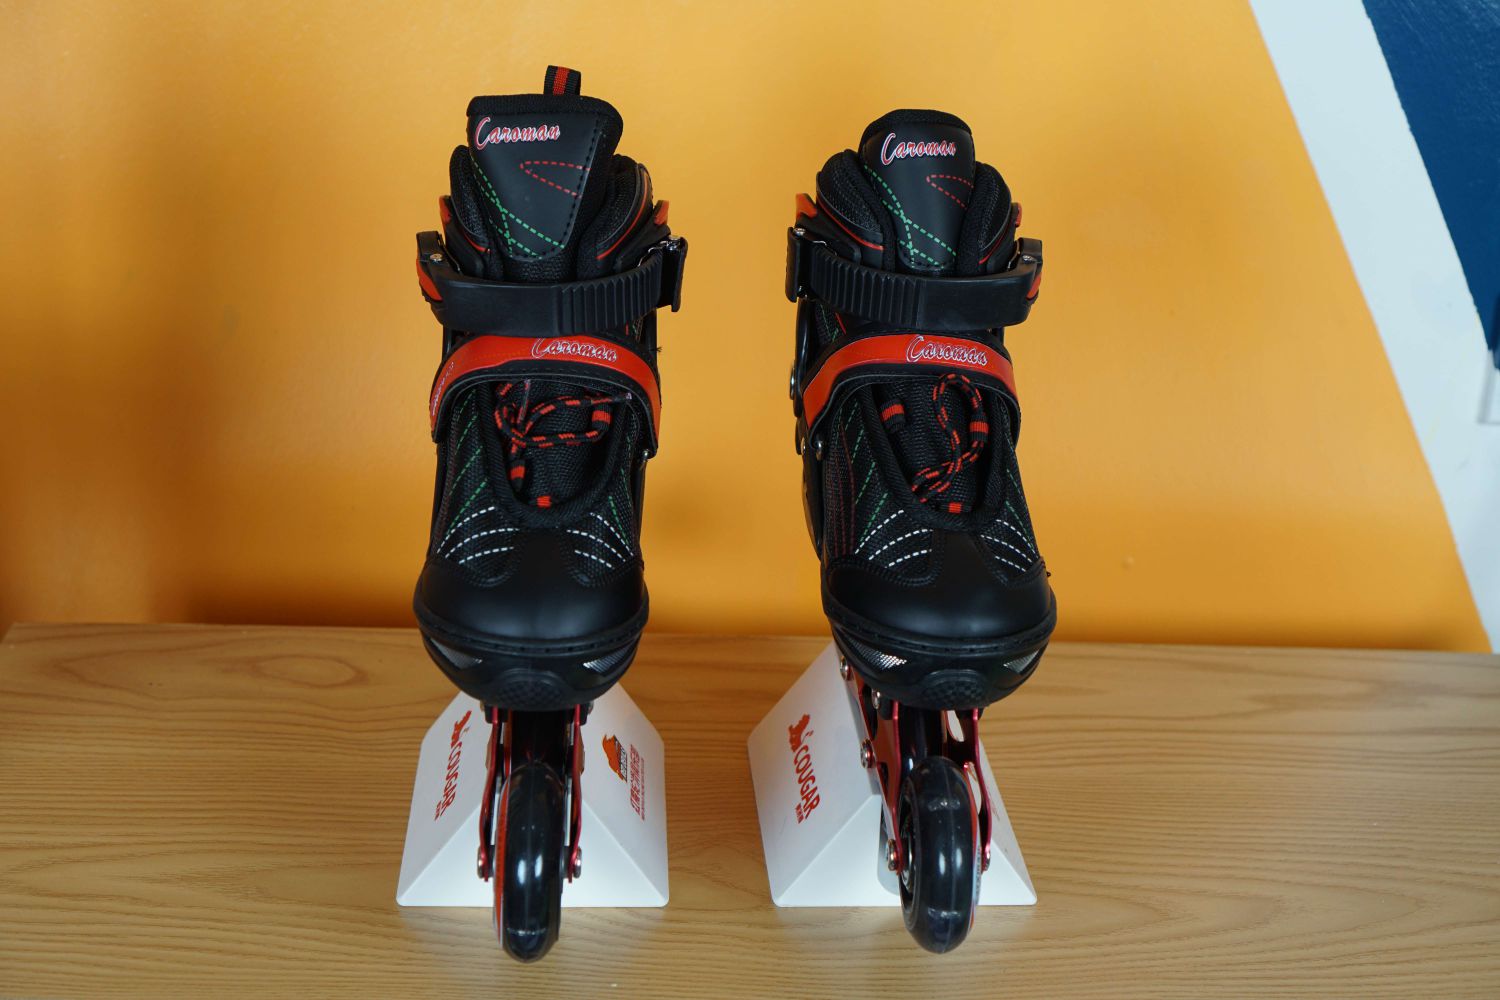 Giày patin Caroman K500 màu đen đỏ chất lượng cao